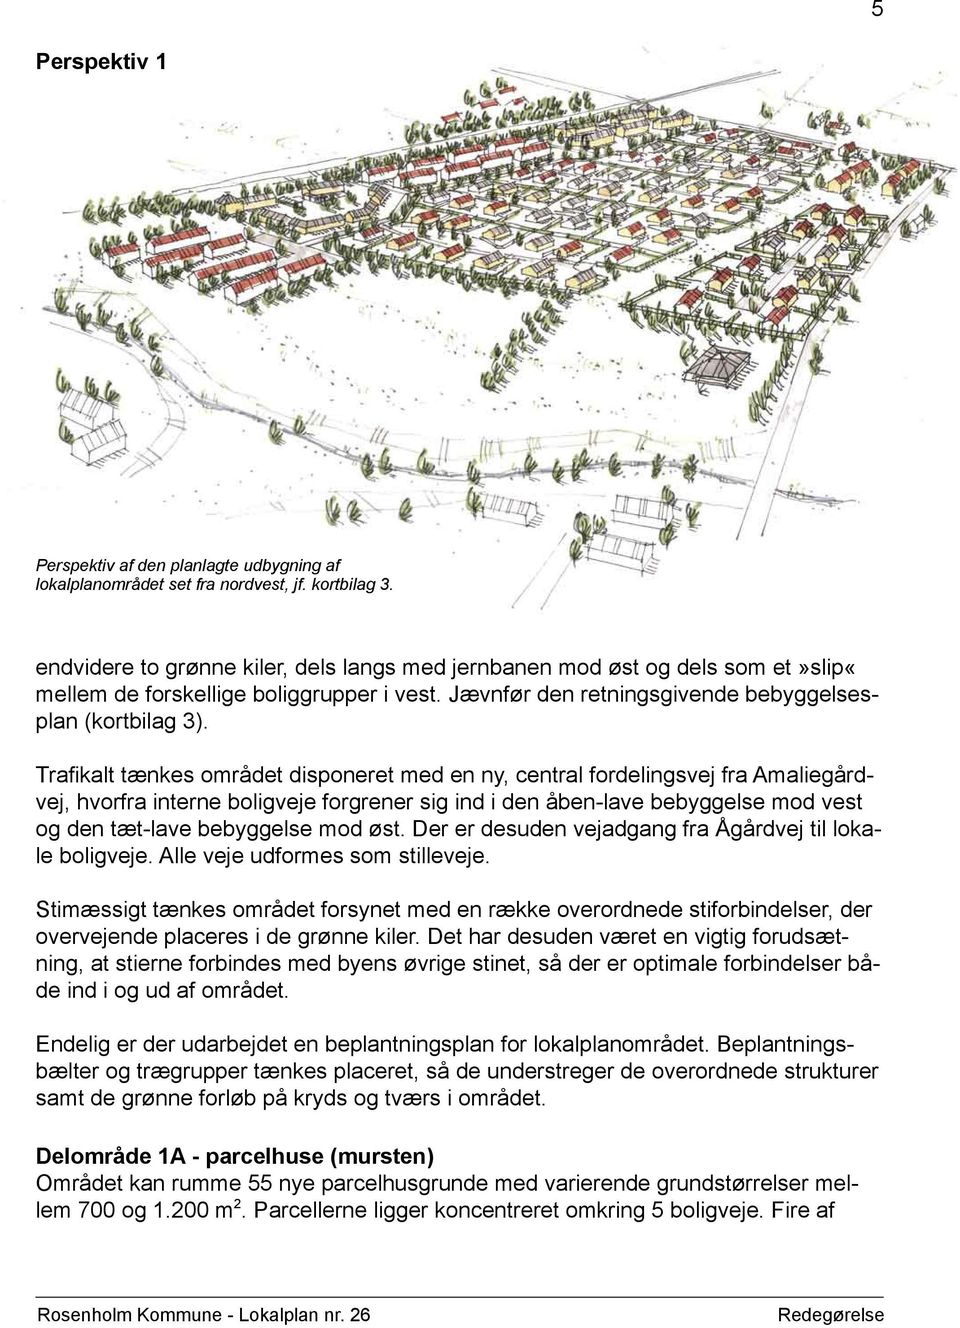 Trafikalt tænkes området disponeret med en ny, central fordelingsvej fra Amaliegårdvej, hvorfra interne boligveje forgrener sig ind i den åben-lave bebyggelse mod vest og den tæt-lave bebyggelse mod